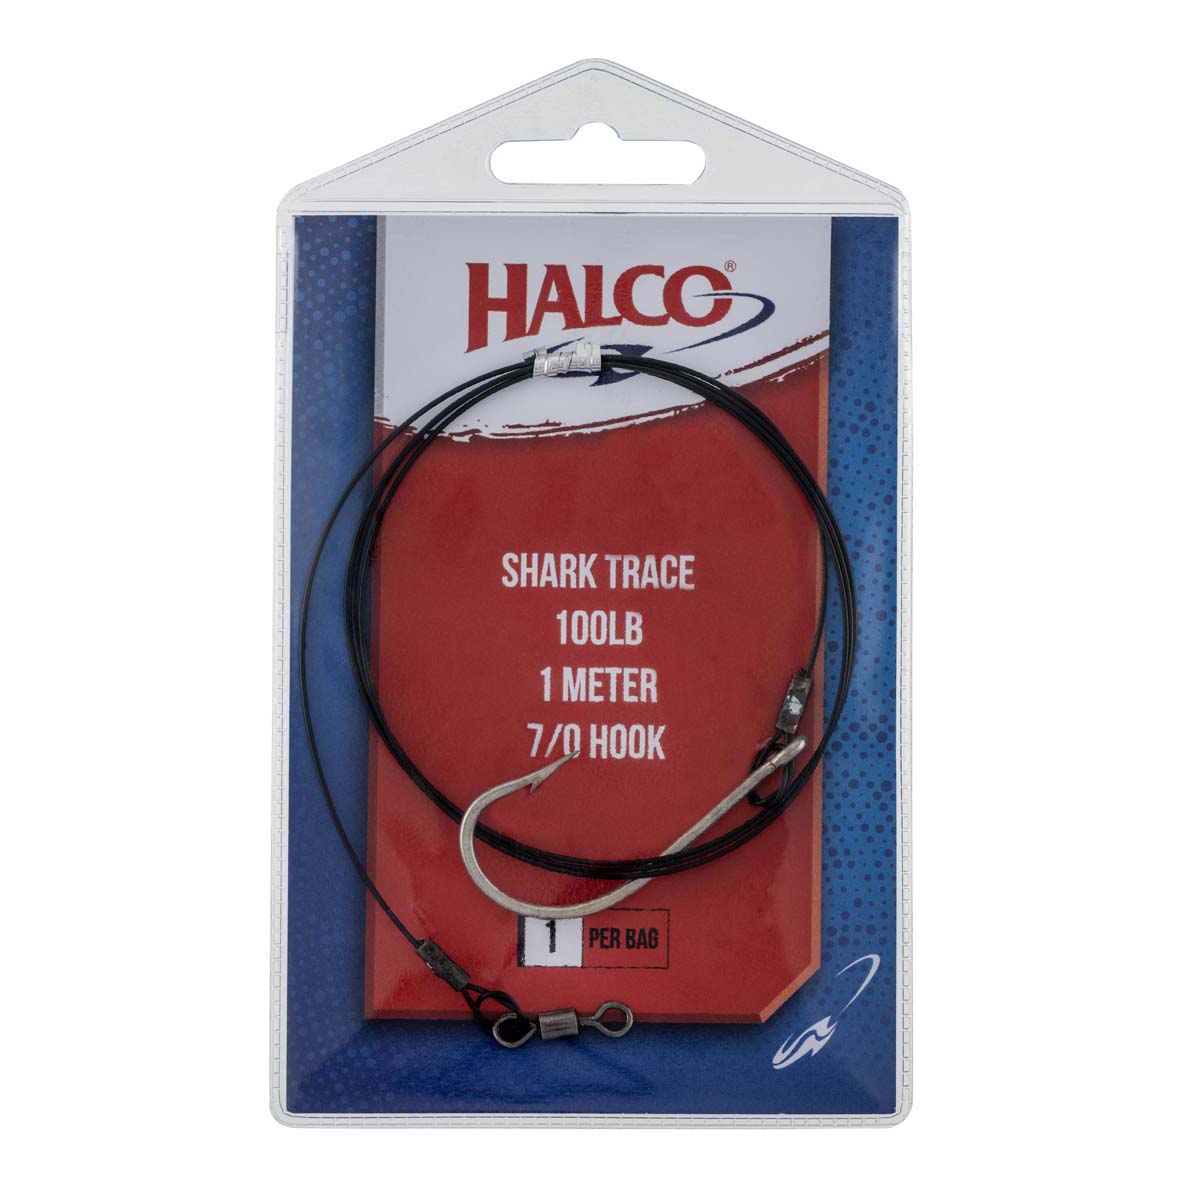 Halco Shark Trace Wire 1m 100lb